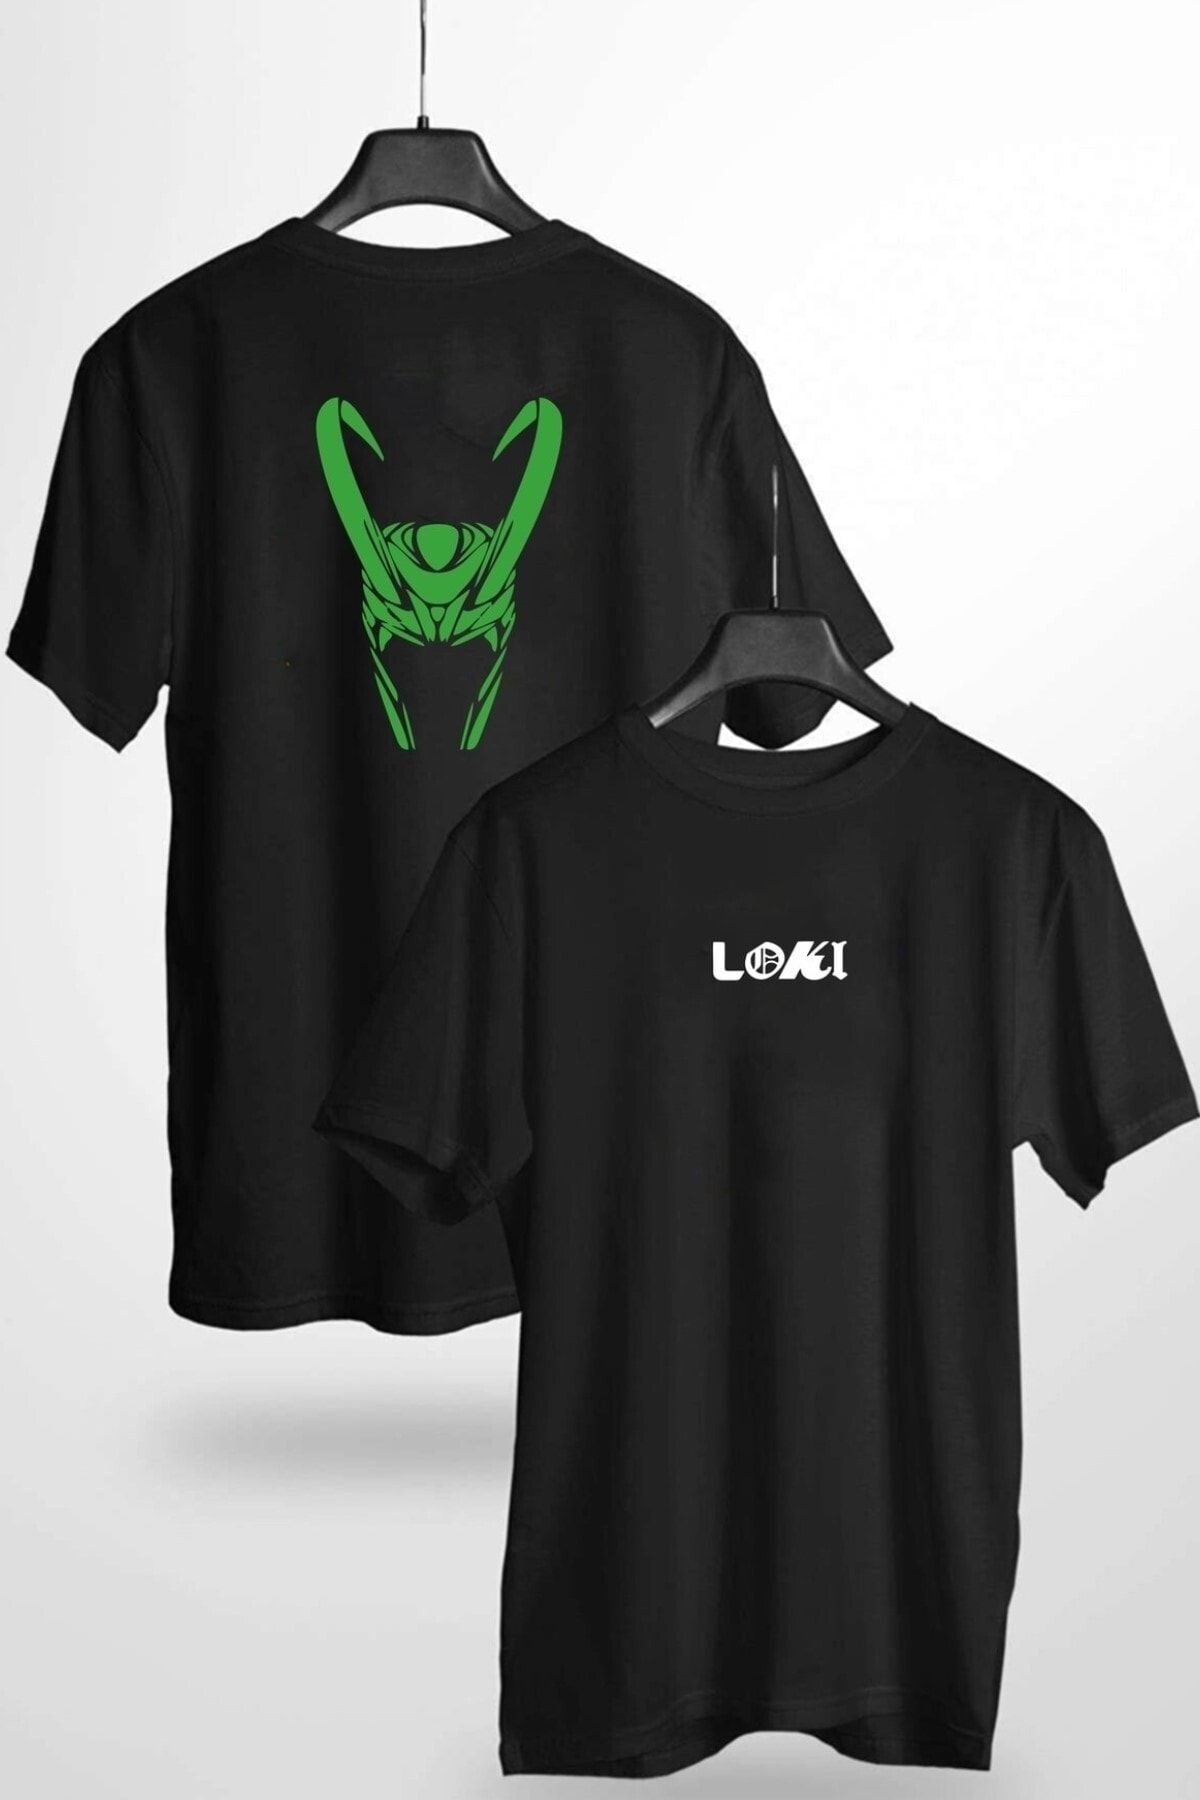 MODAGEN Marvel Loki Çift Taraf Tasarım Baskılı Unisex Siyah Tshirt